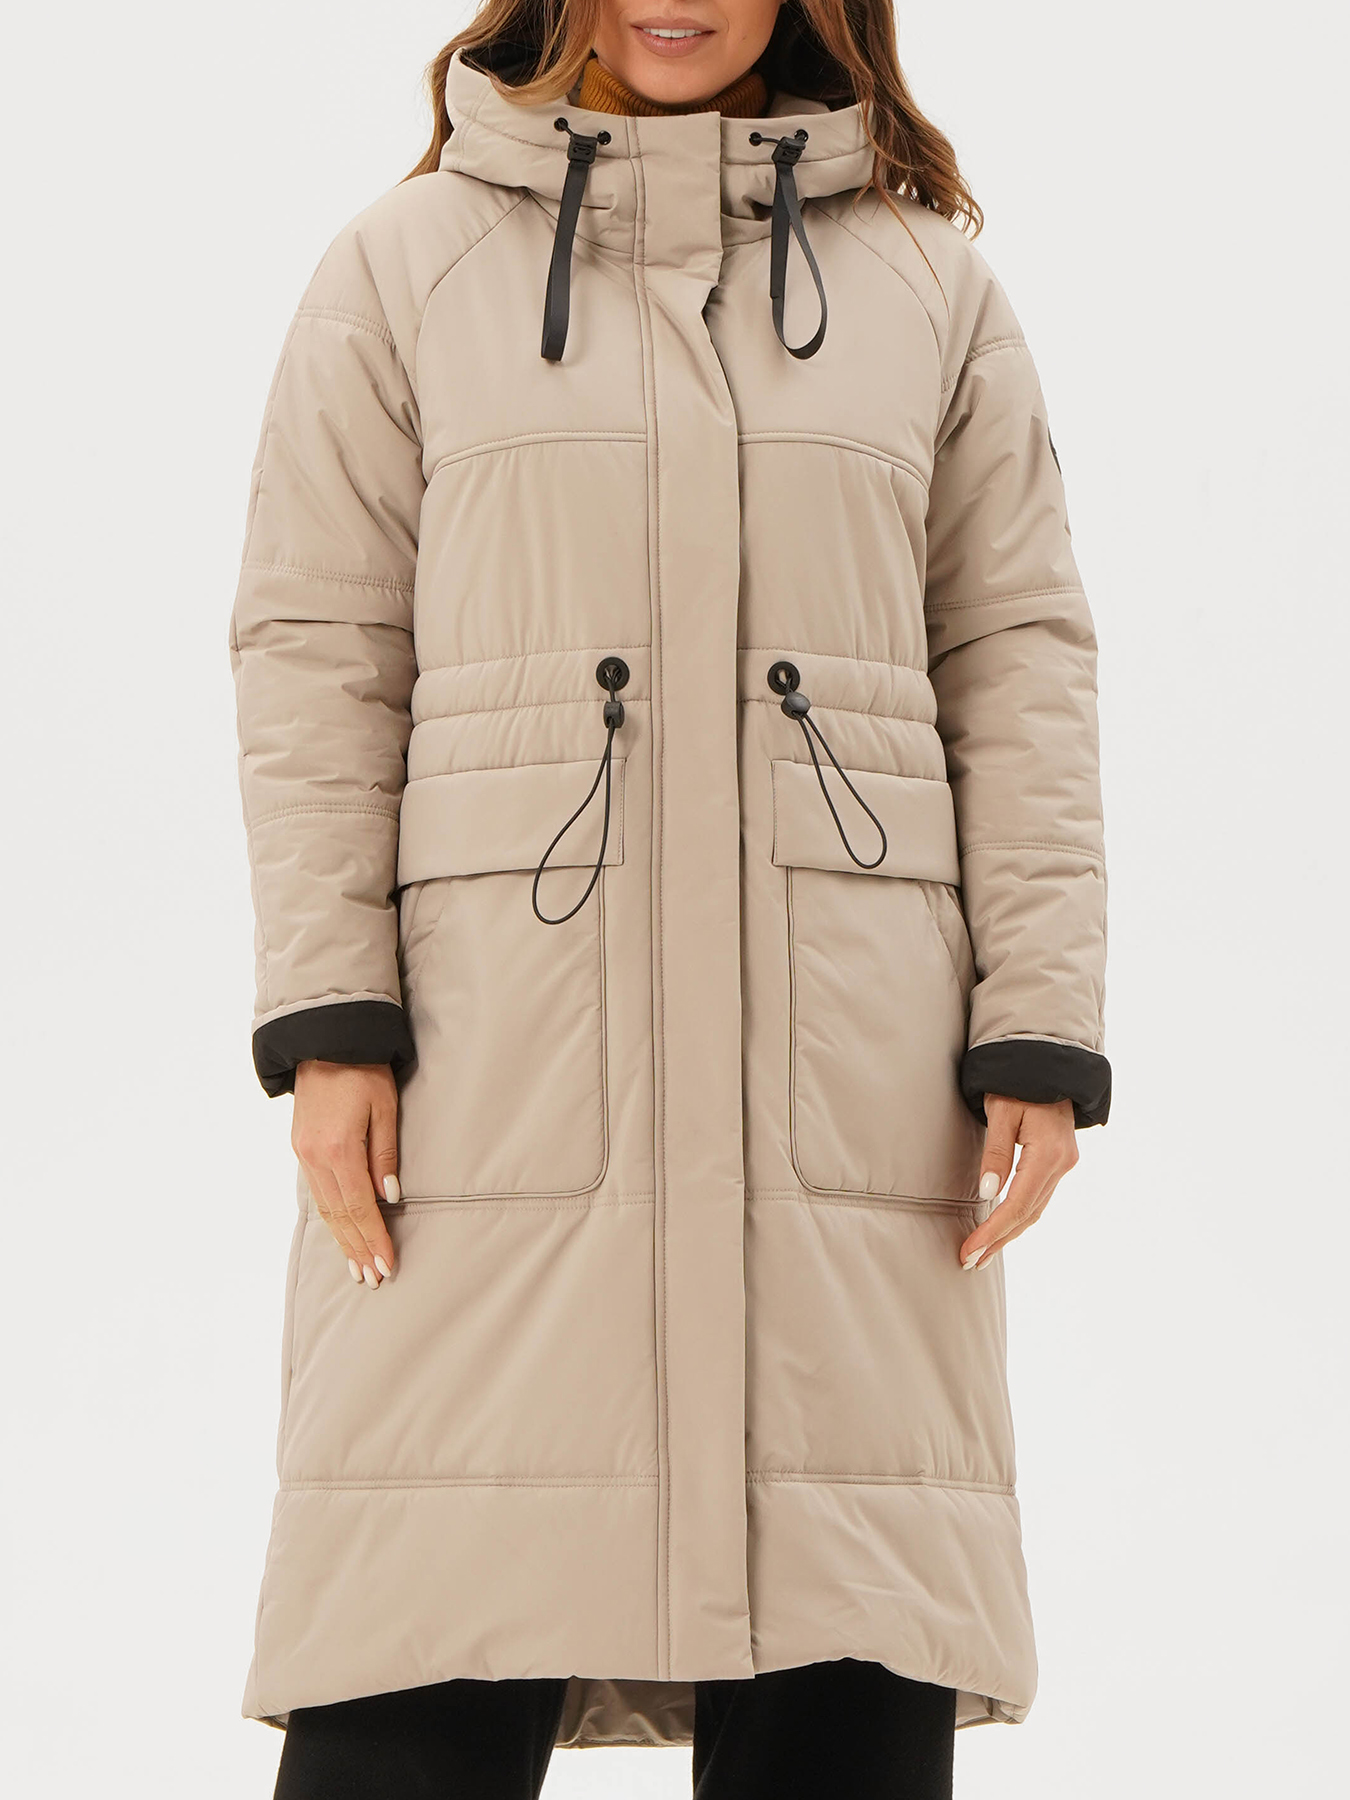 Пальто зимнее Maritta 433564-023, цвет бежевый, размер 50